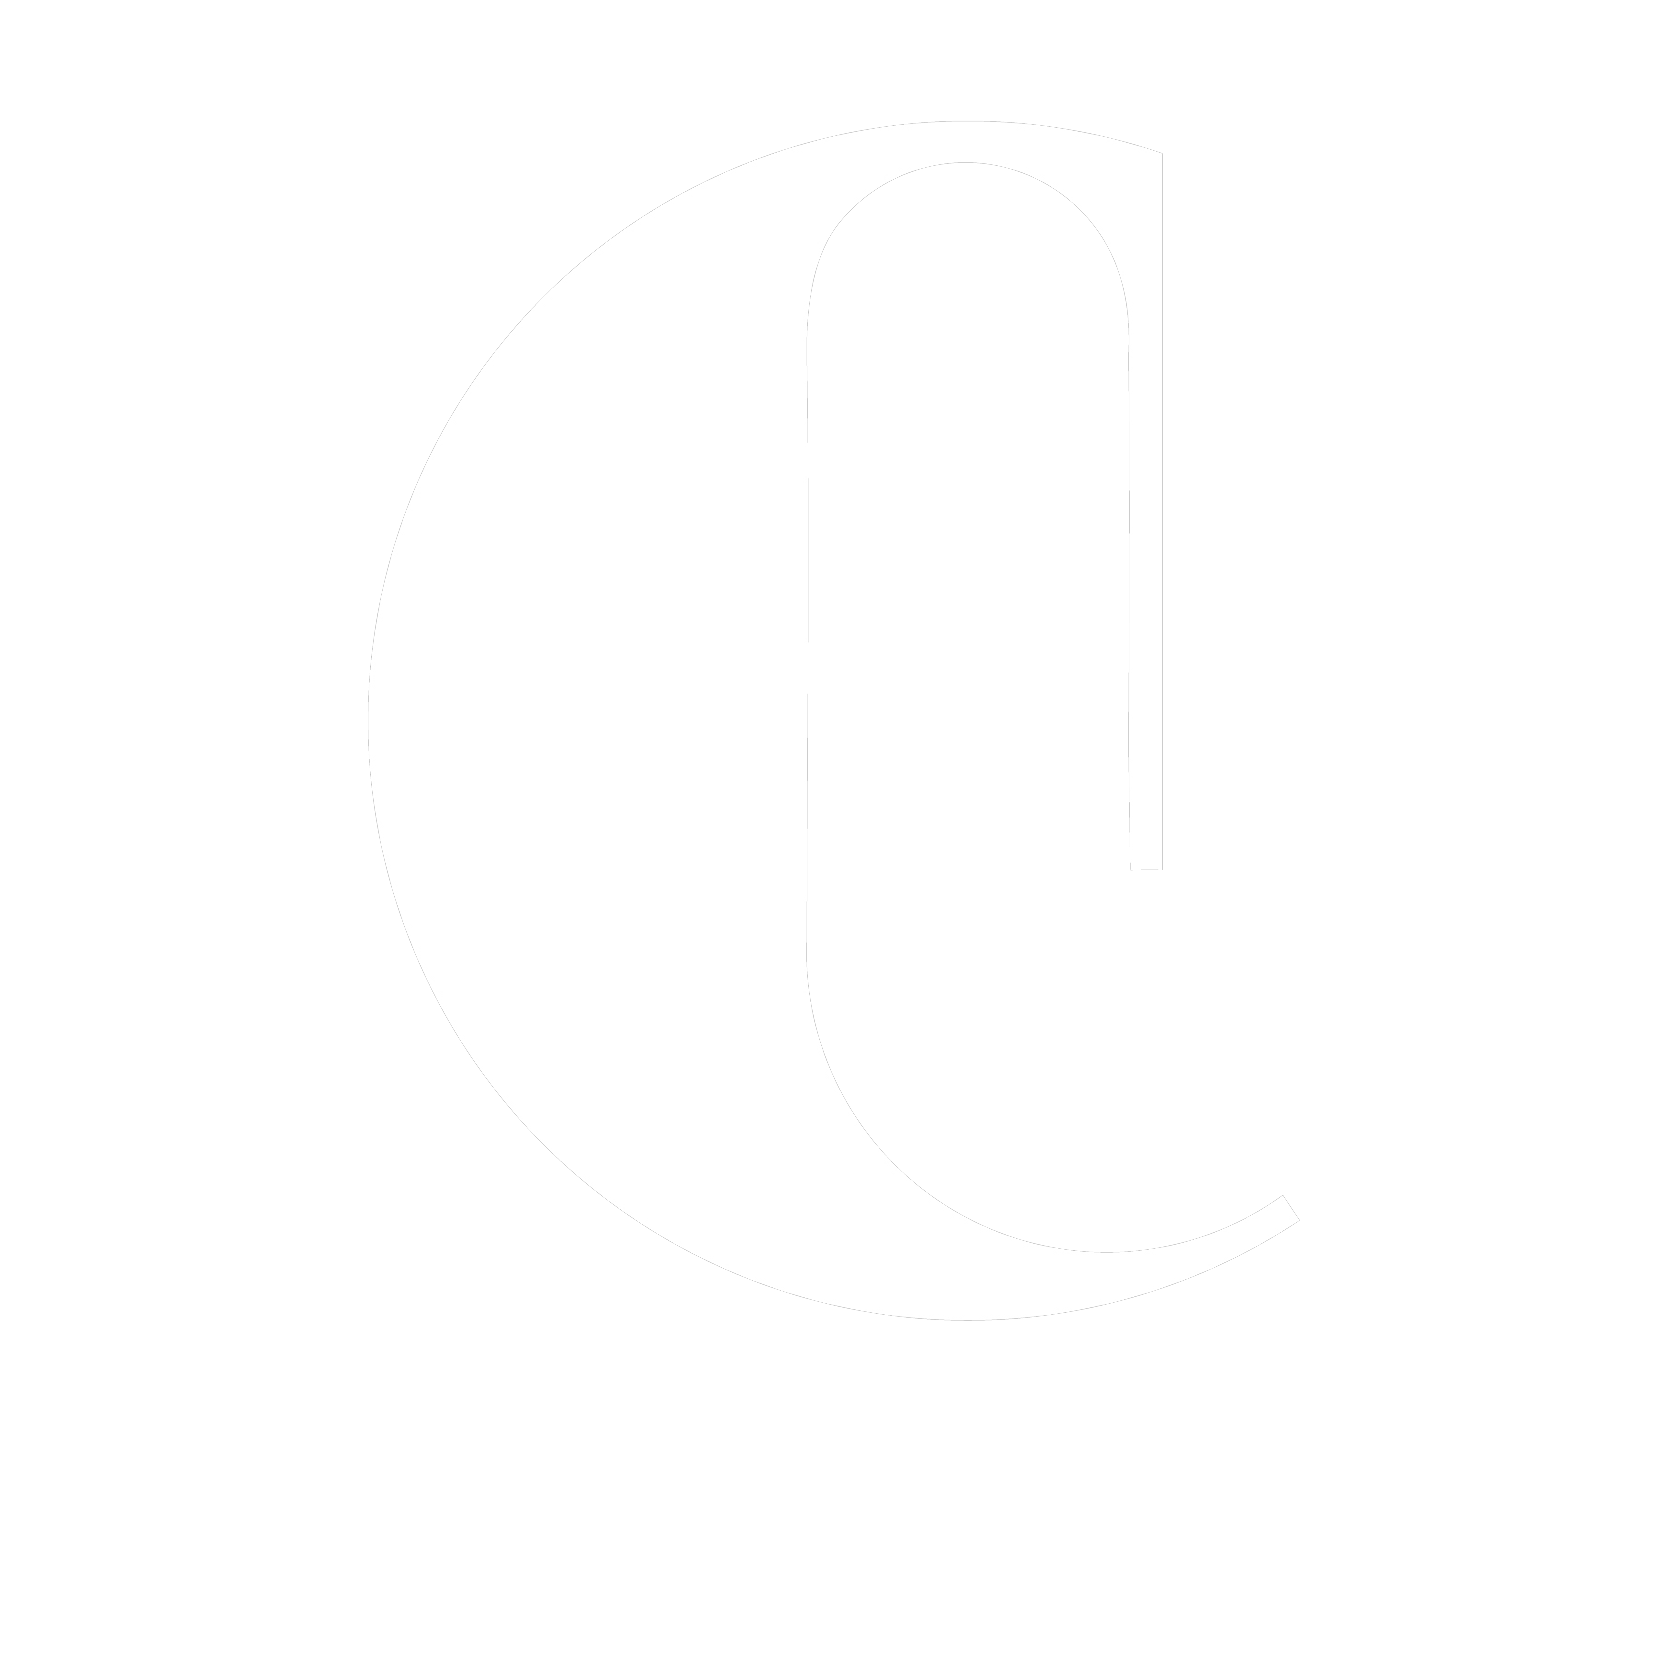 Laura Civetti